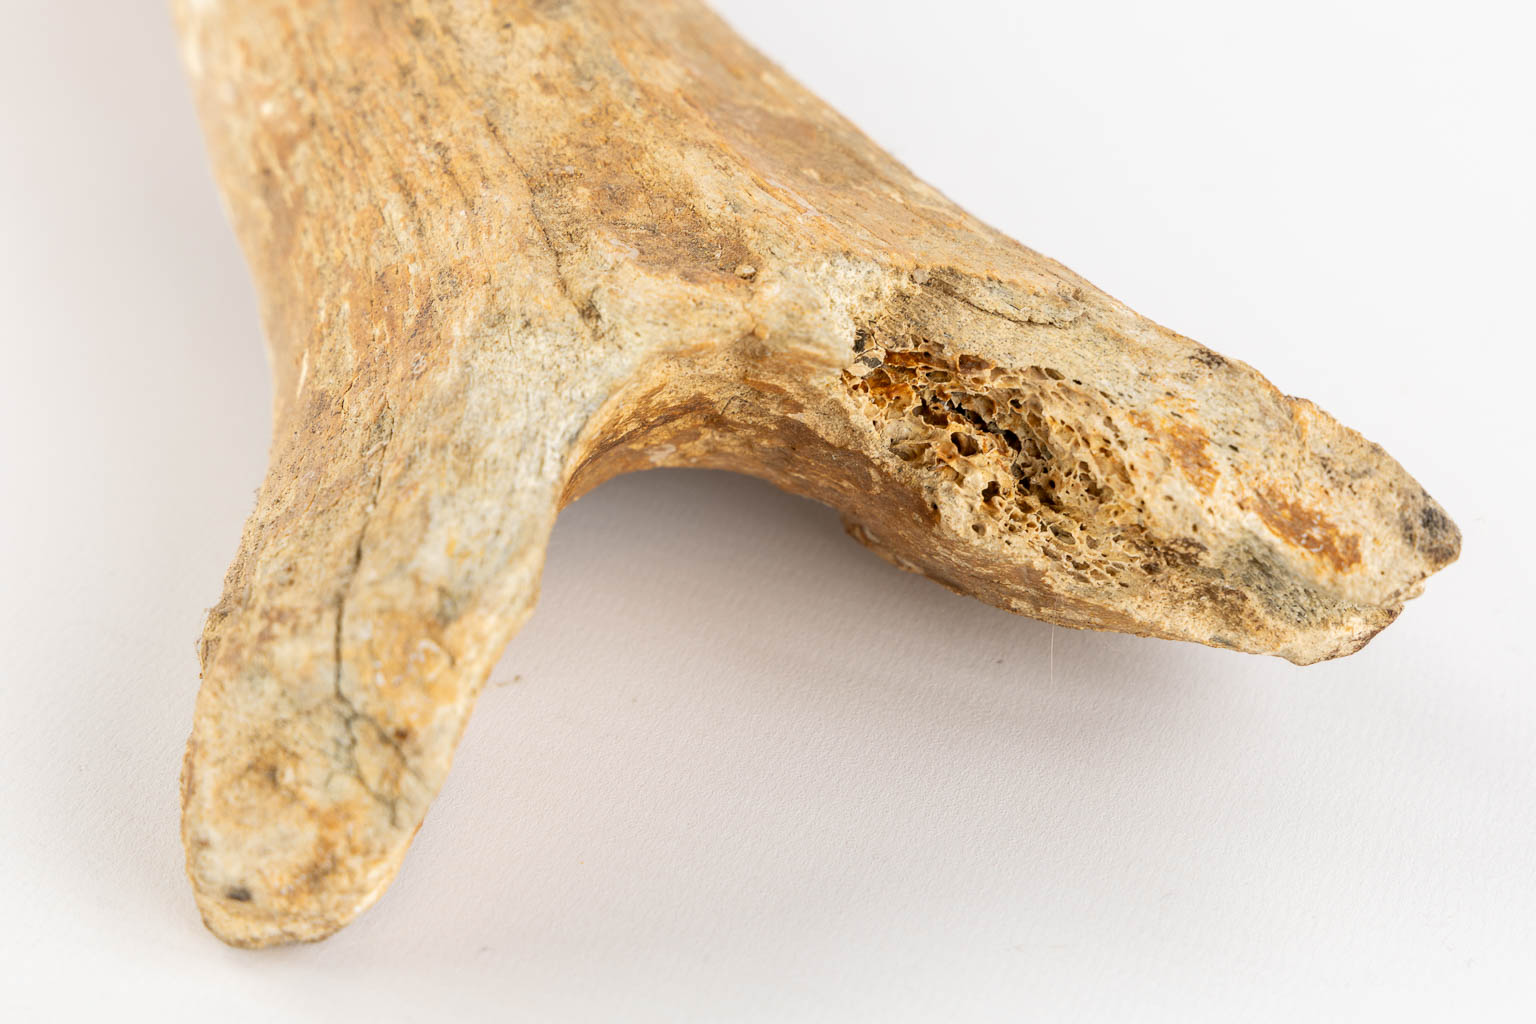 Drie stuks Mammoet - Mammuthus primigenius - fossielen, twee beenderen en een tand. (L:54 cm)